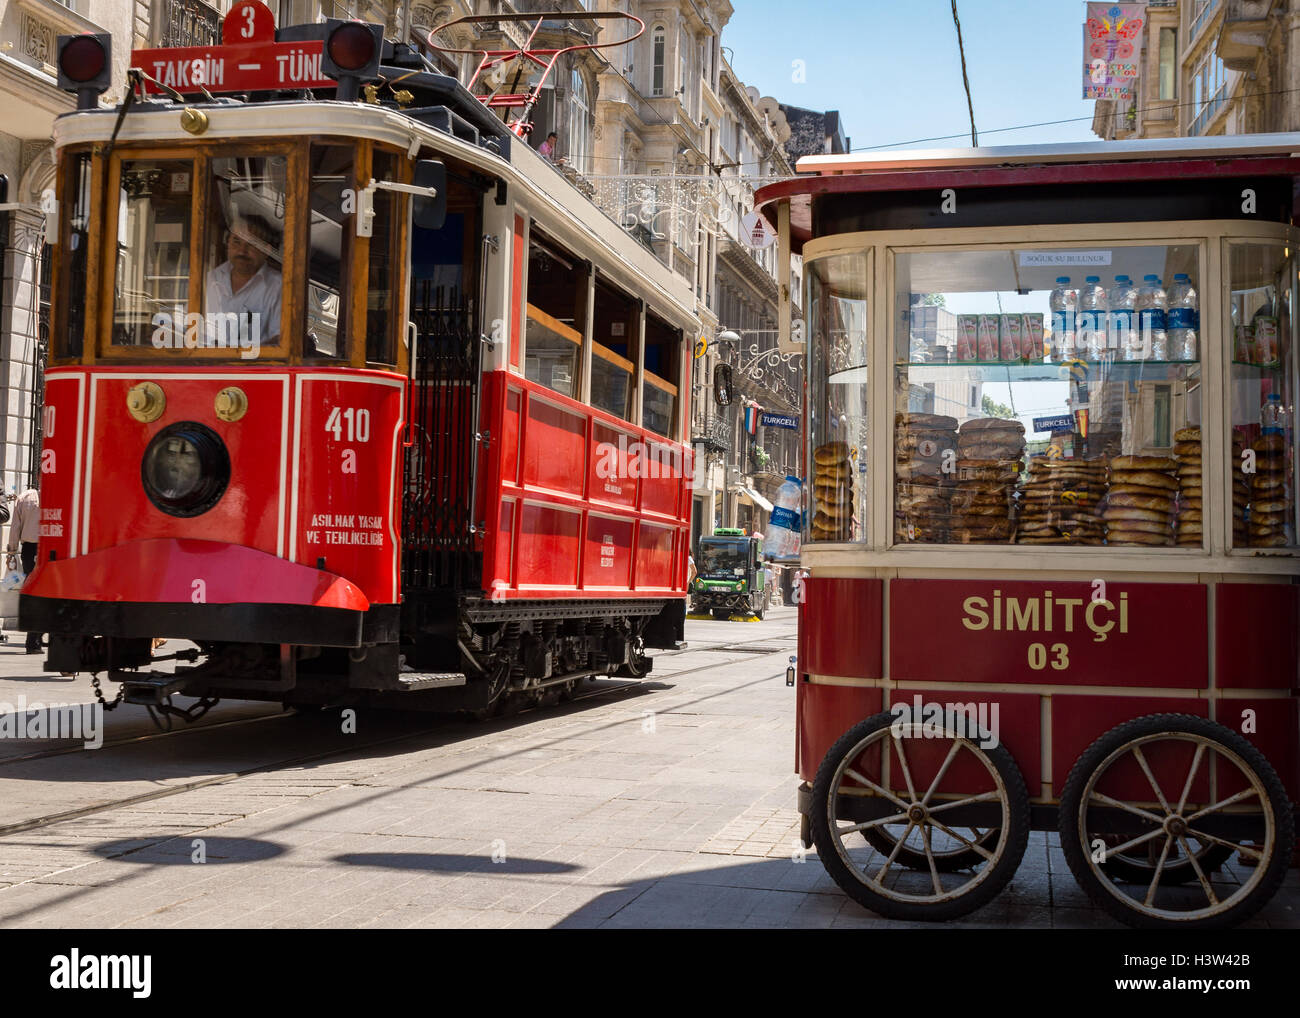 Le tramway transport de personnes de la Place Taksim à Tünel - a 3km à pied de bout en bout, à Istanbul (Turquie) Banque D'Images